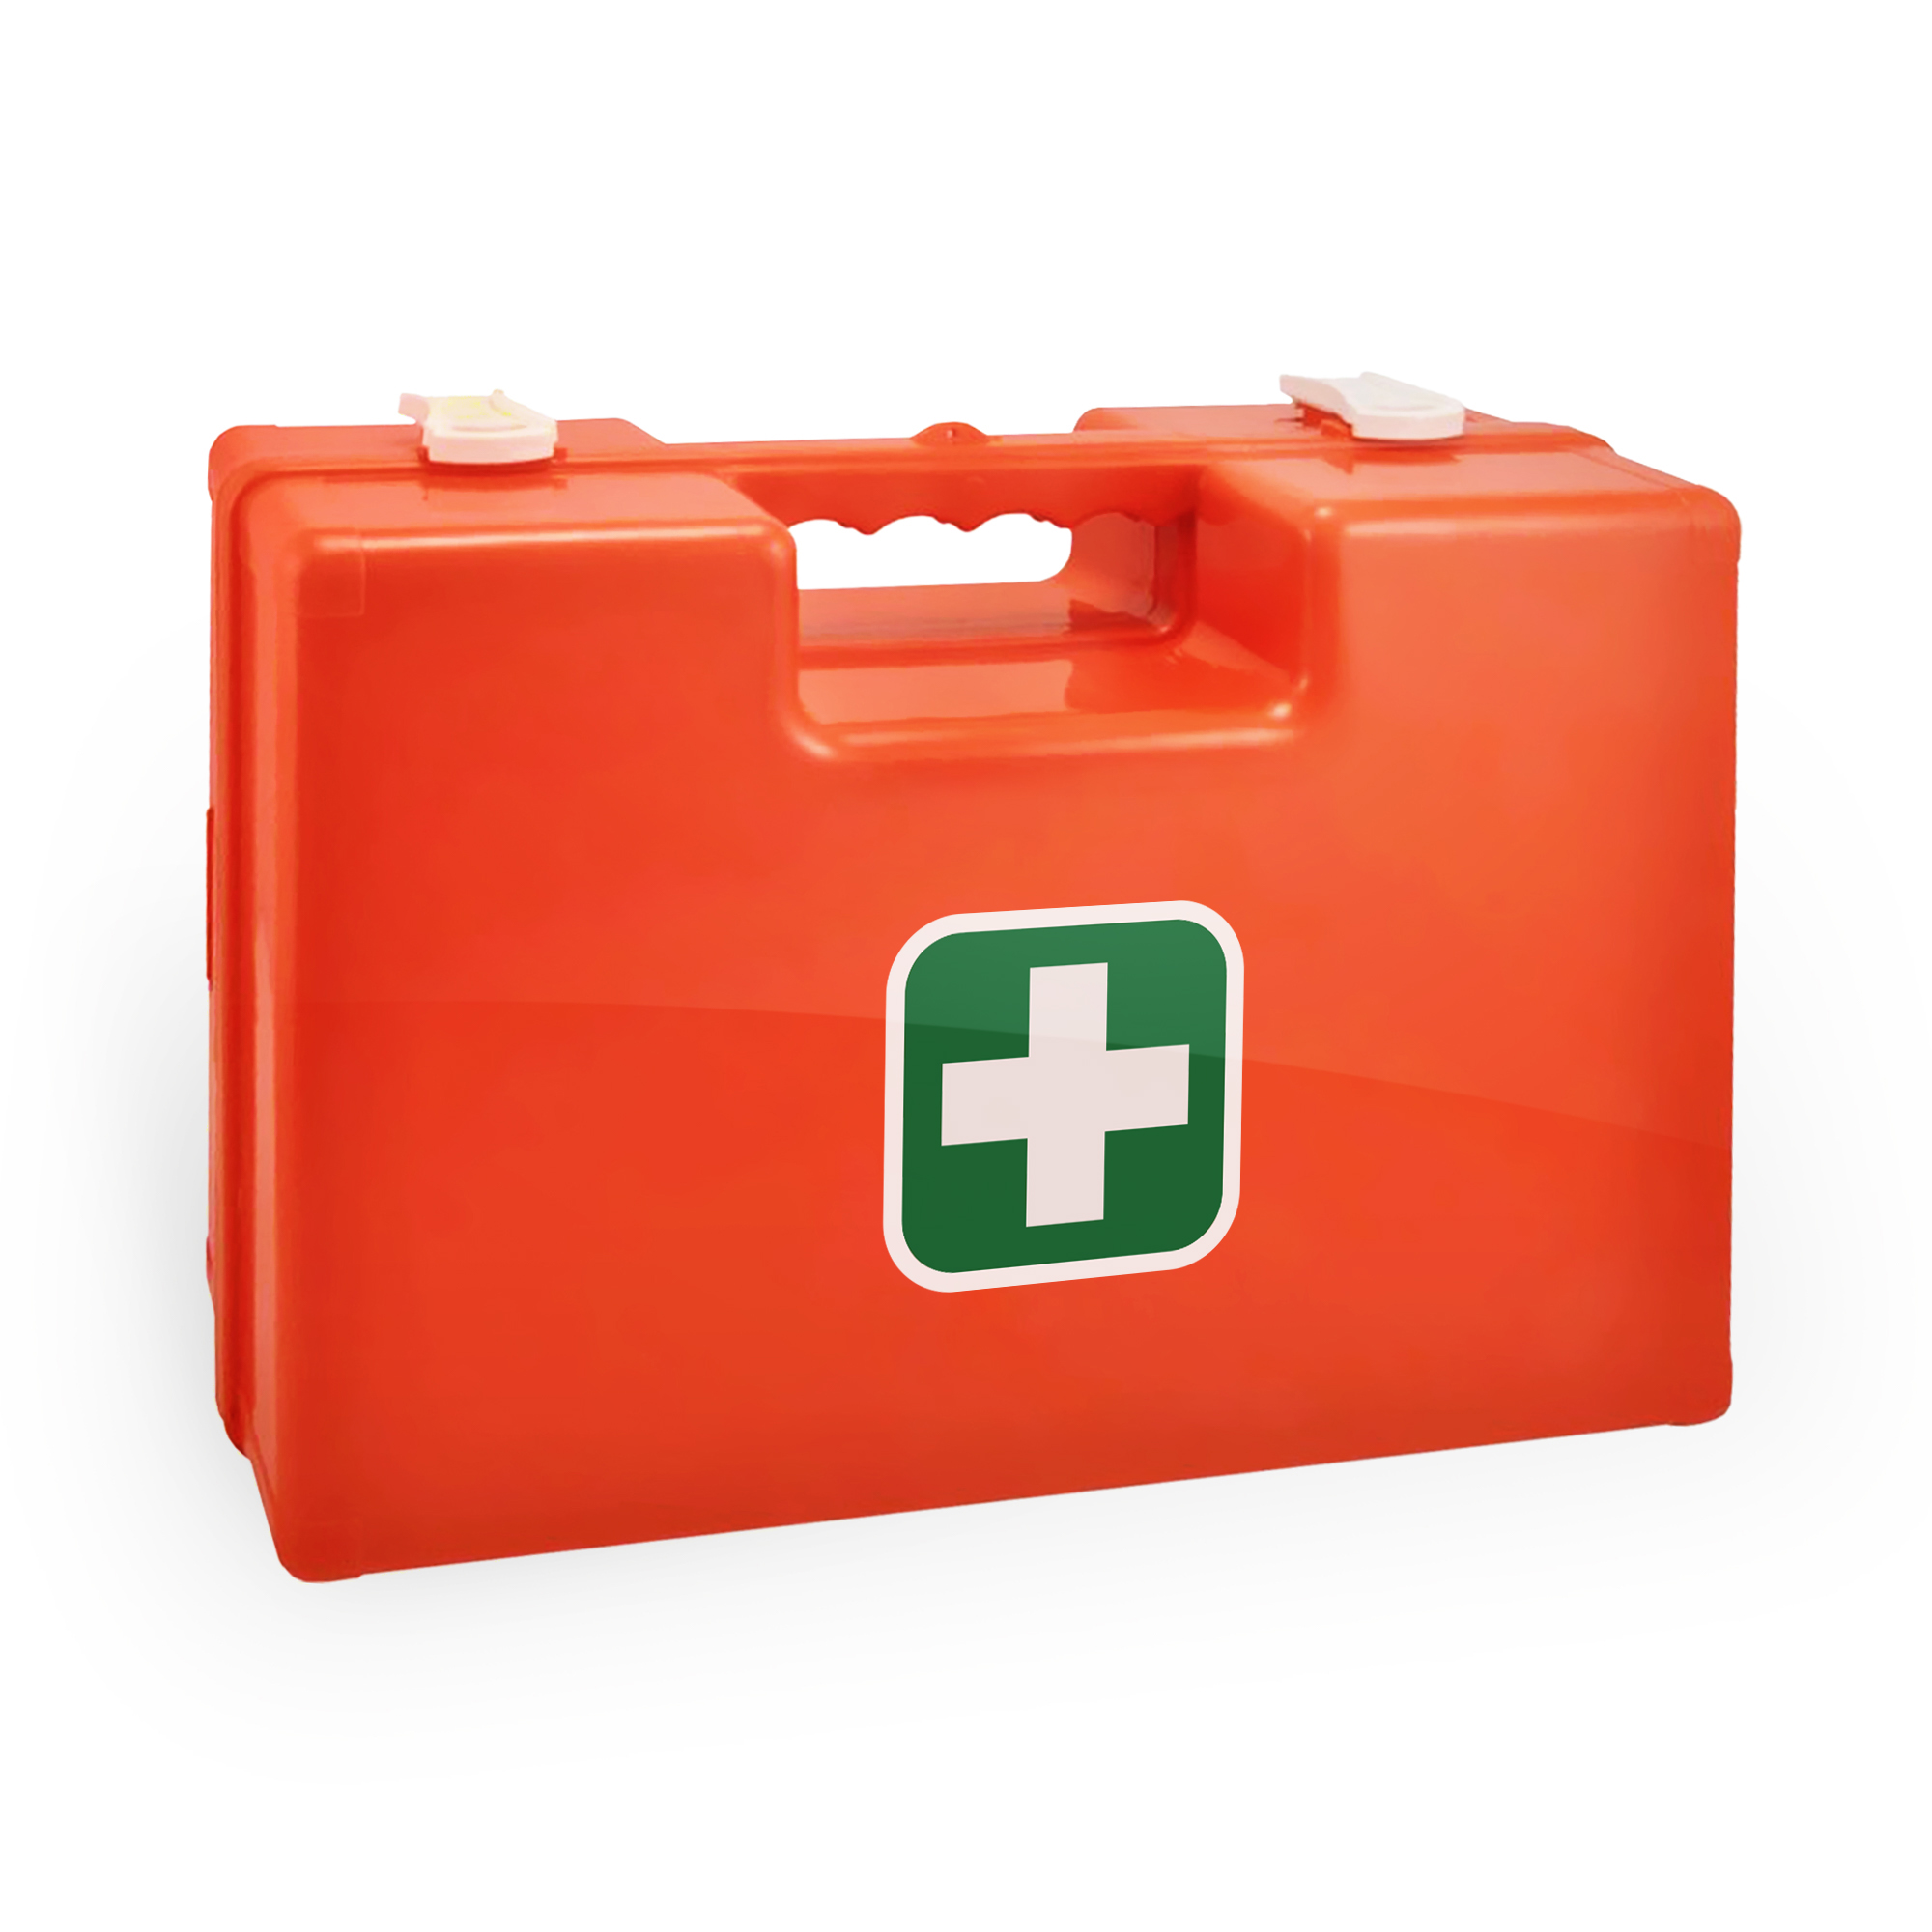 First Aid Kit, empty, 32 x 22,5 x 12 cm